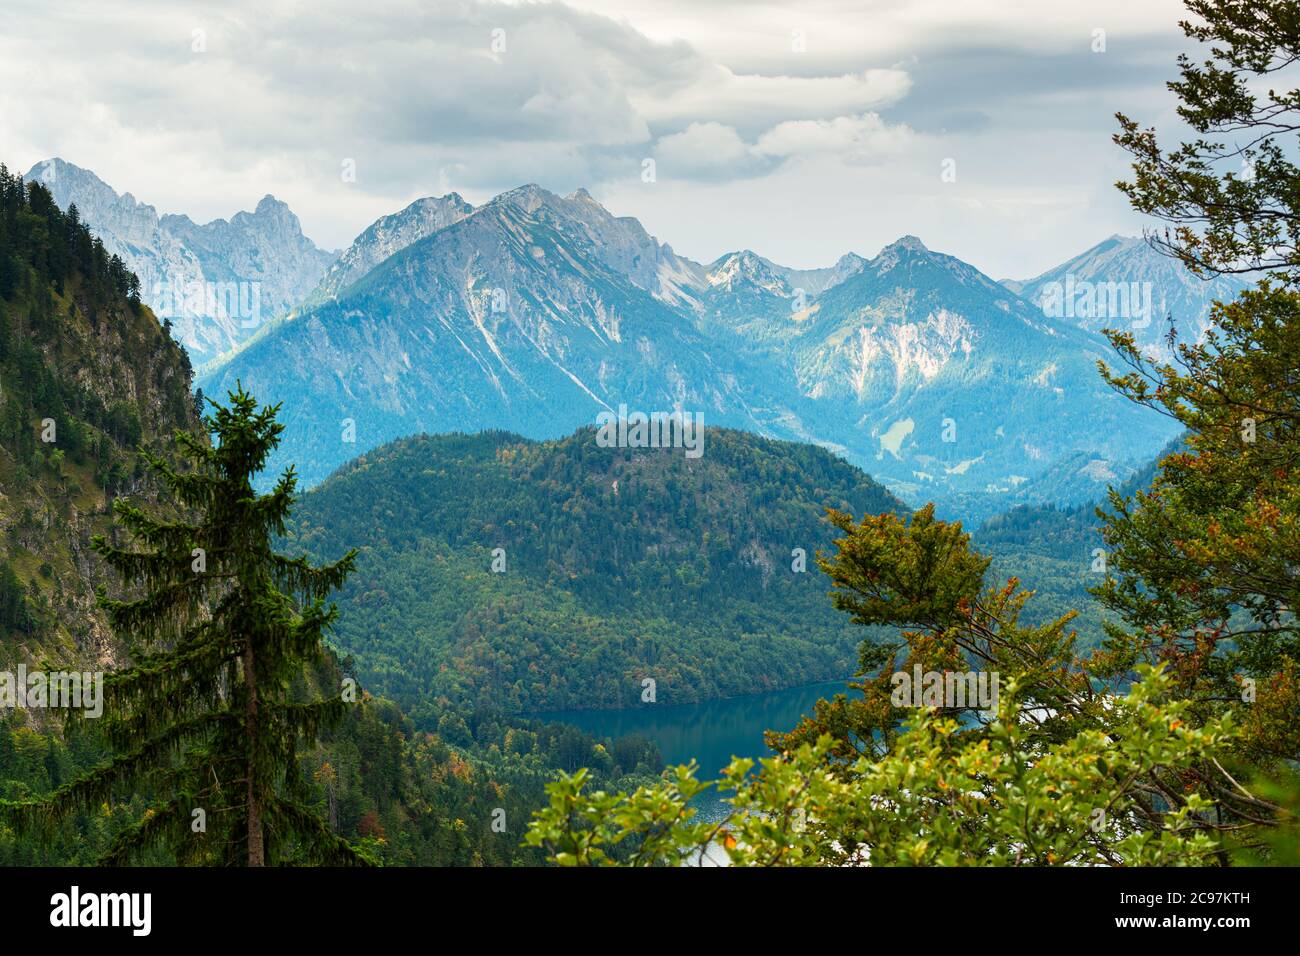 Paysage des Alpes bavaroises à Fussen, en Allemagne avec le lac Alpsee. Banque D'Images